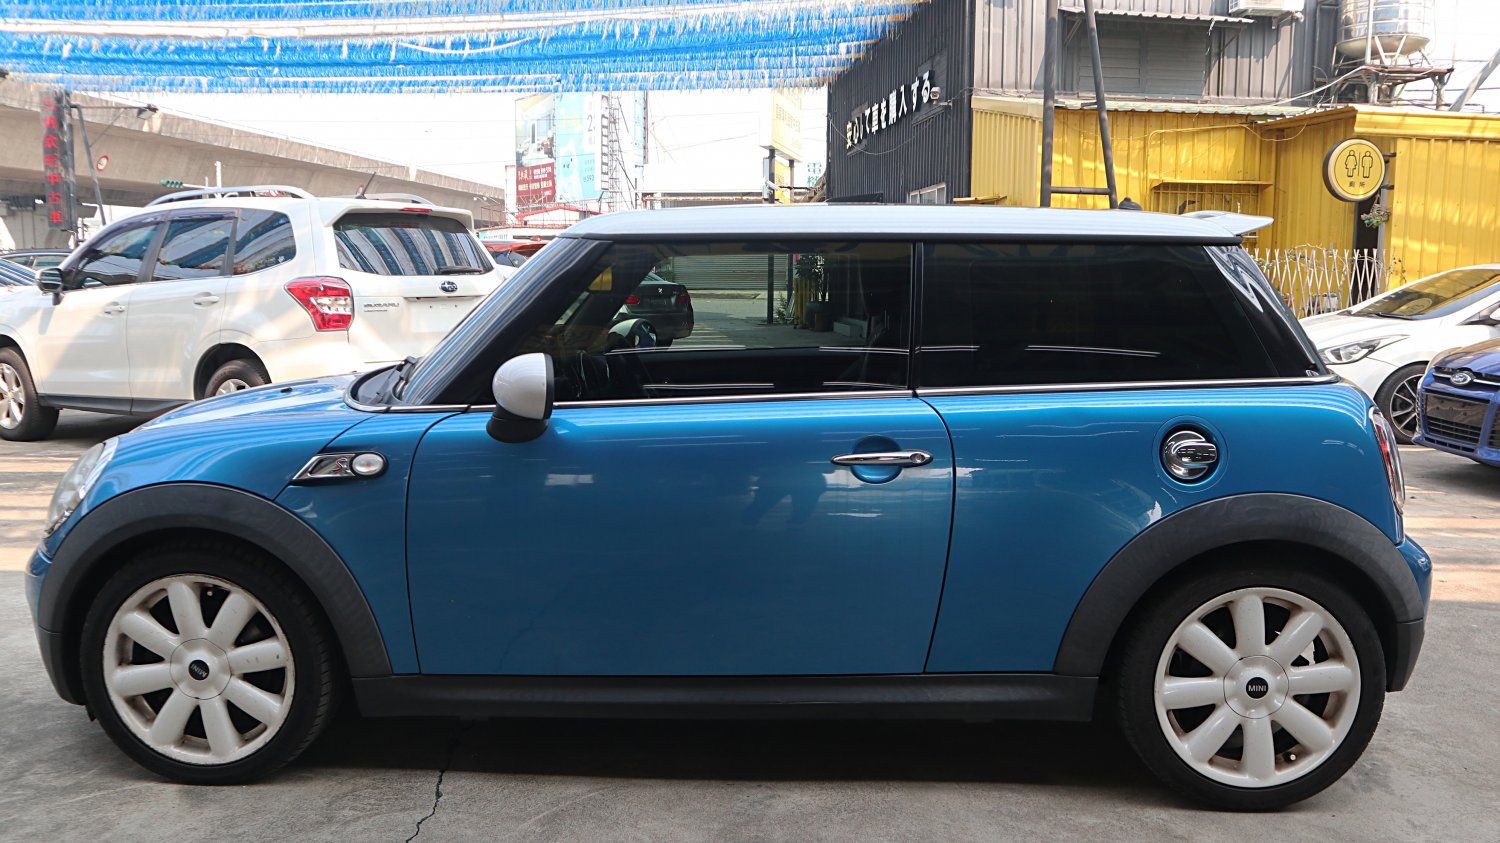 Mini 迷你 ／ Cooper S ／ 2007年 ／ 2007年Mini Cooper S 藍白色 迷你中古車 ／ 九州欣旺汽車 (台南)